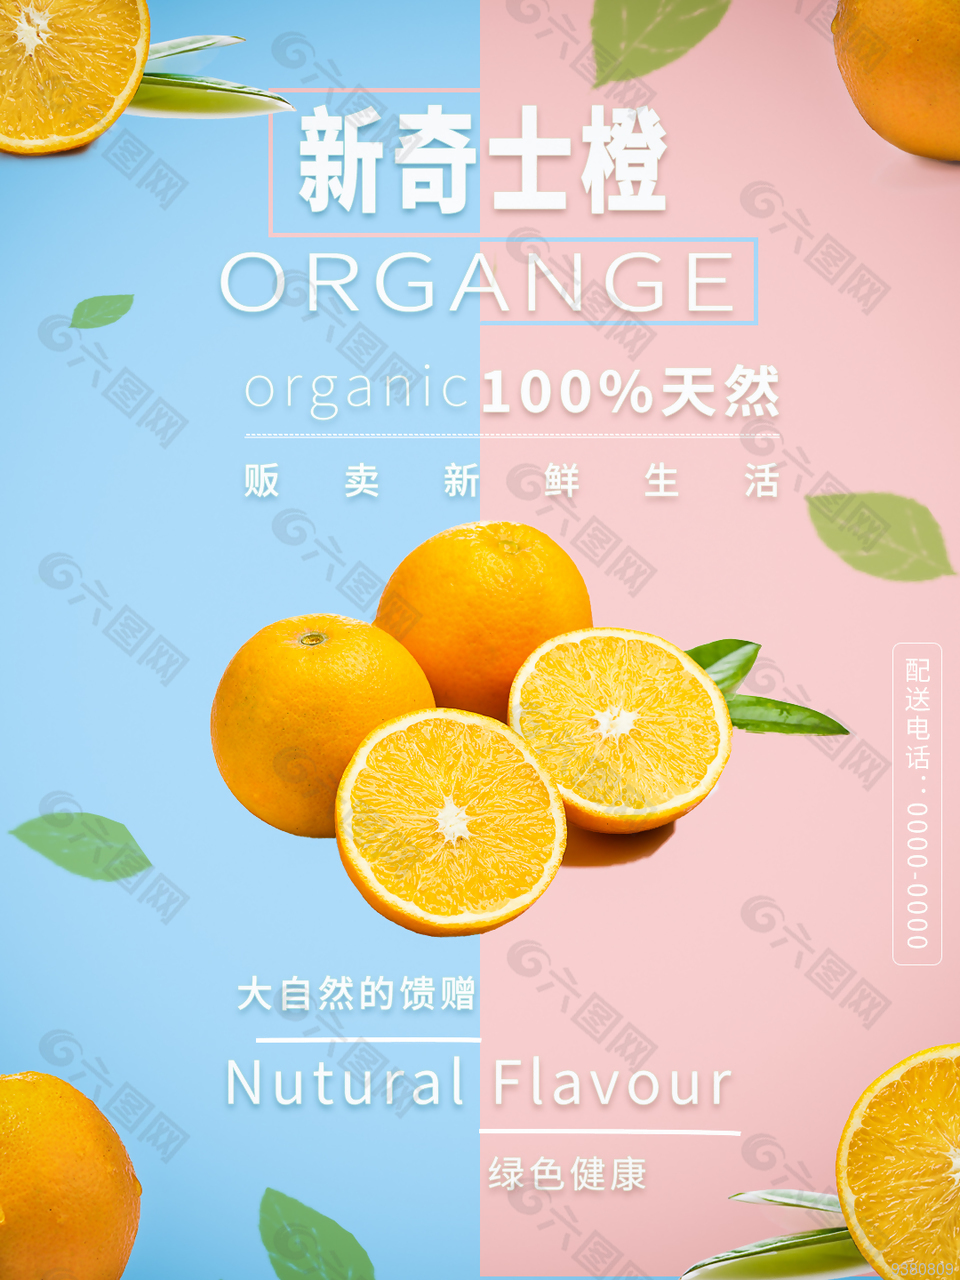 夏日果汁饮品宣传海报